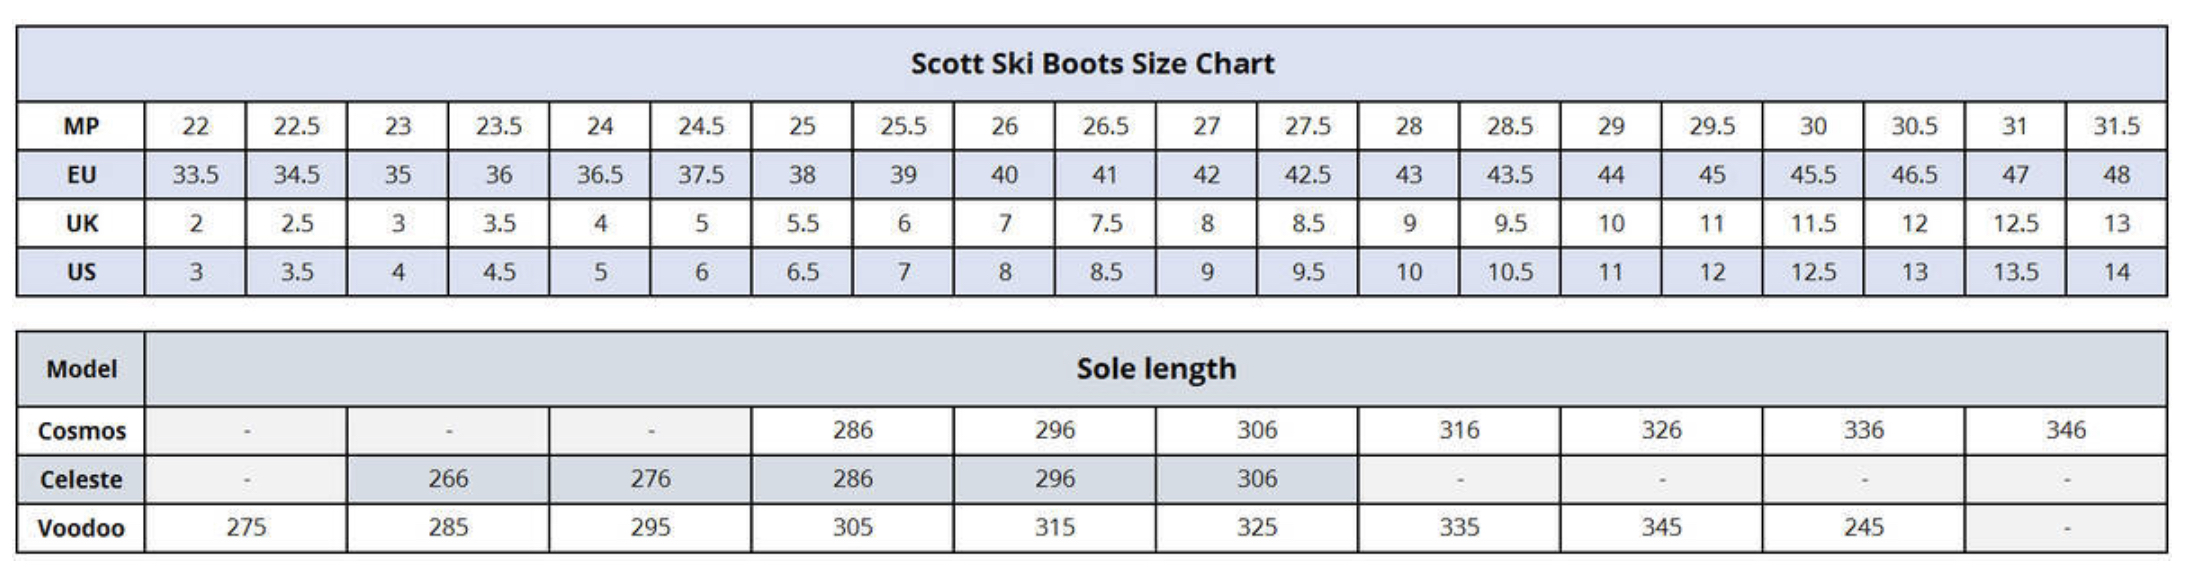 28 285 ski boot size